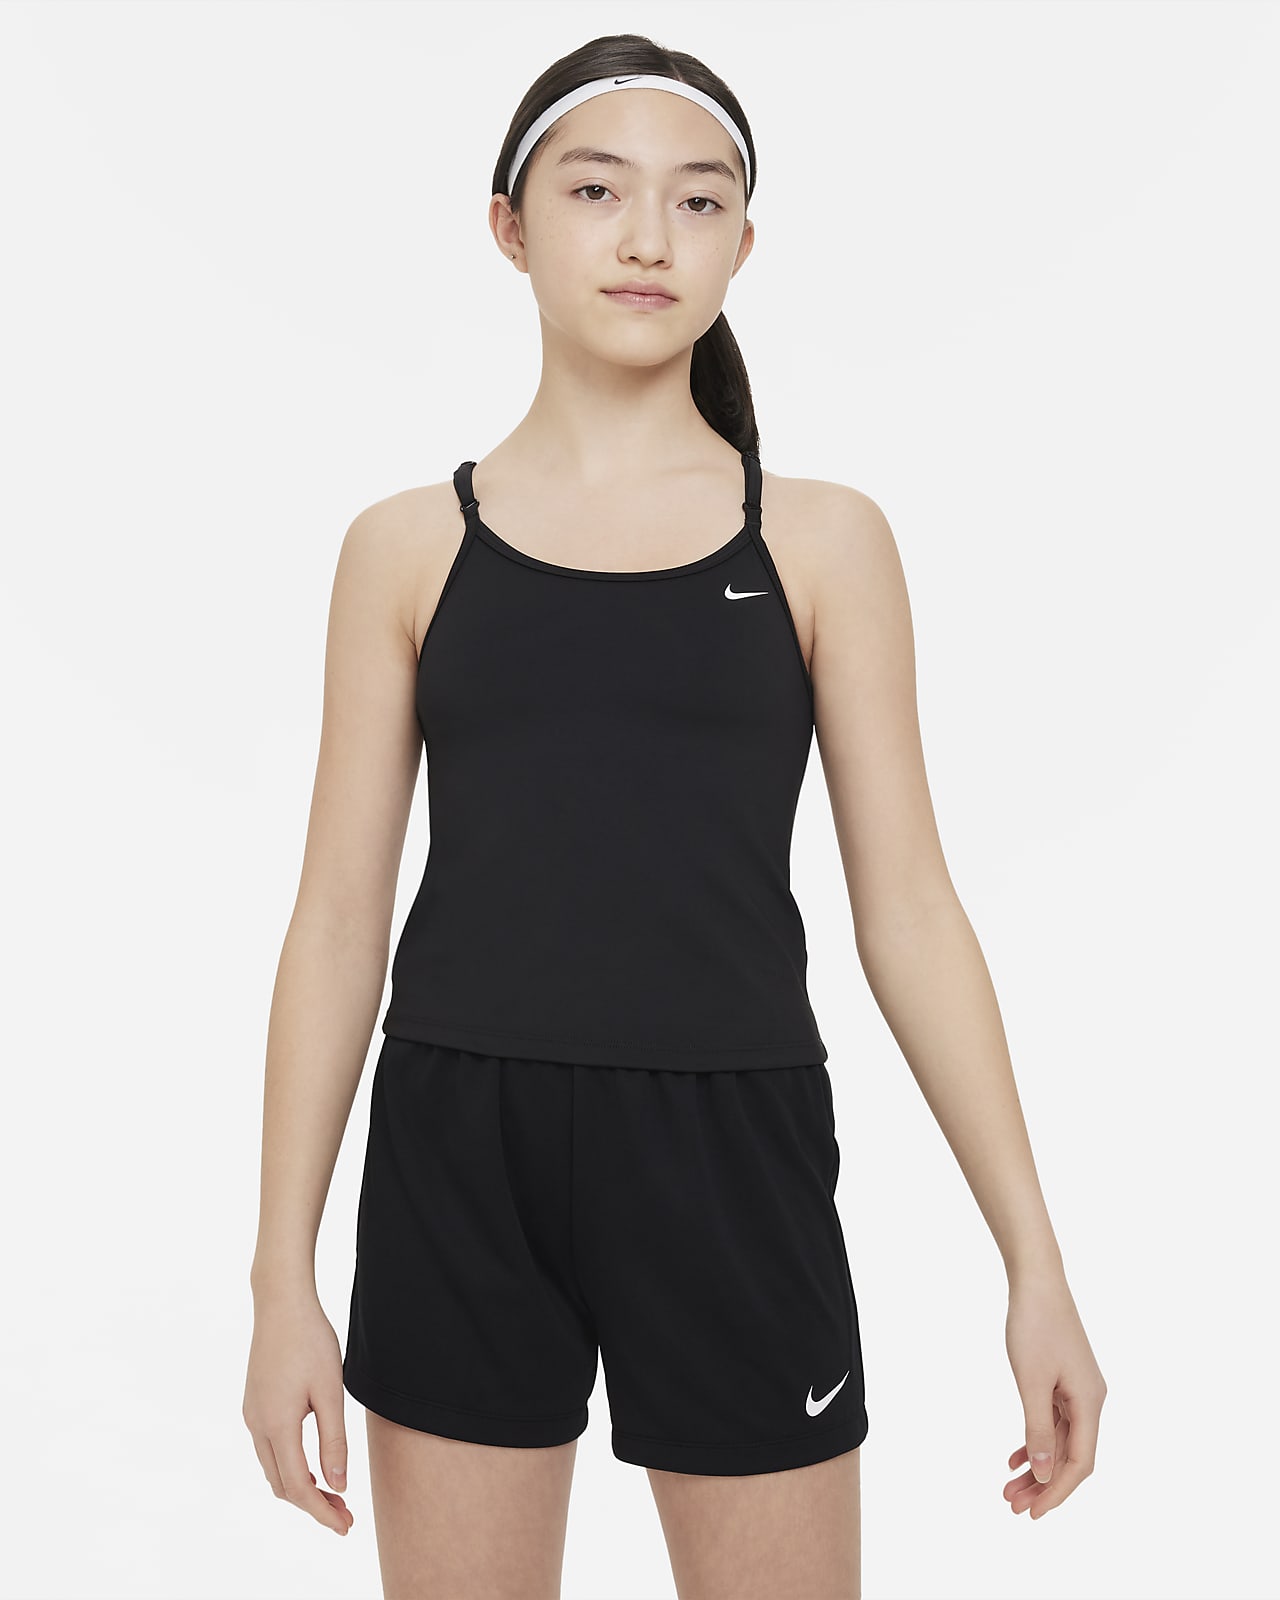 Beyond Yoga Nike Womens Tank Top Sports Bra Black Size Small Lot 2